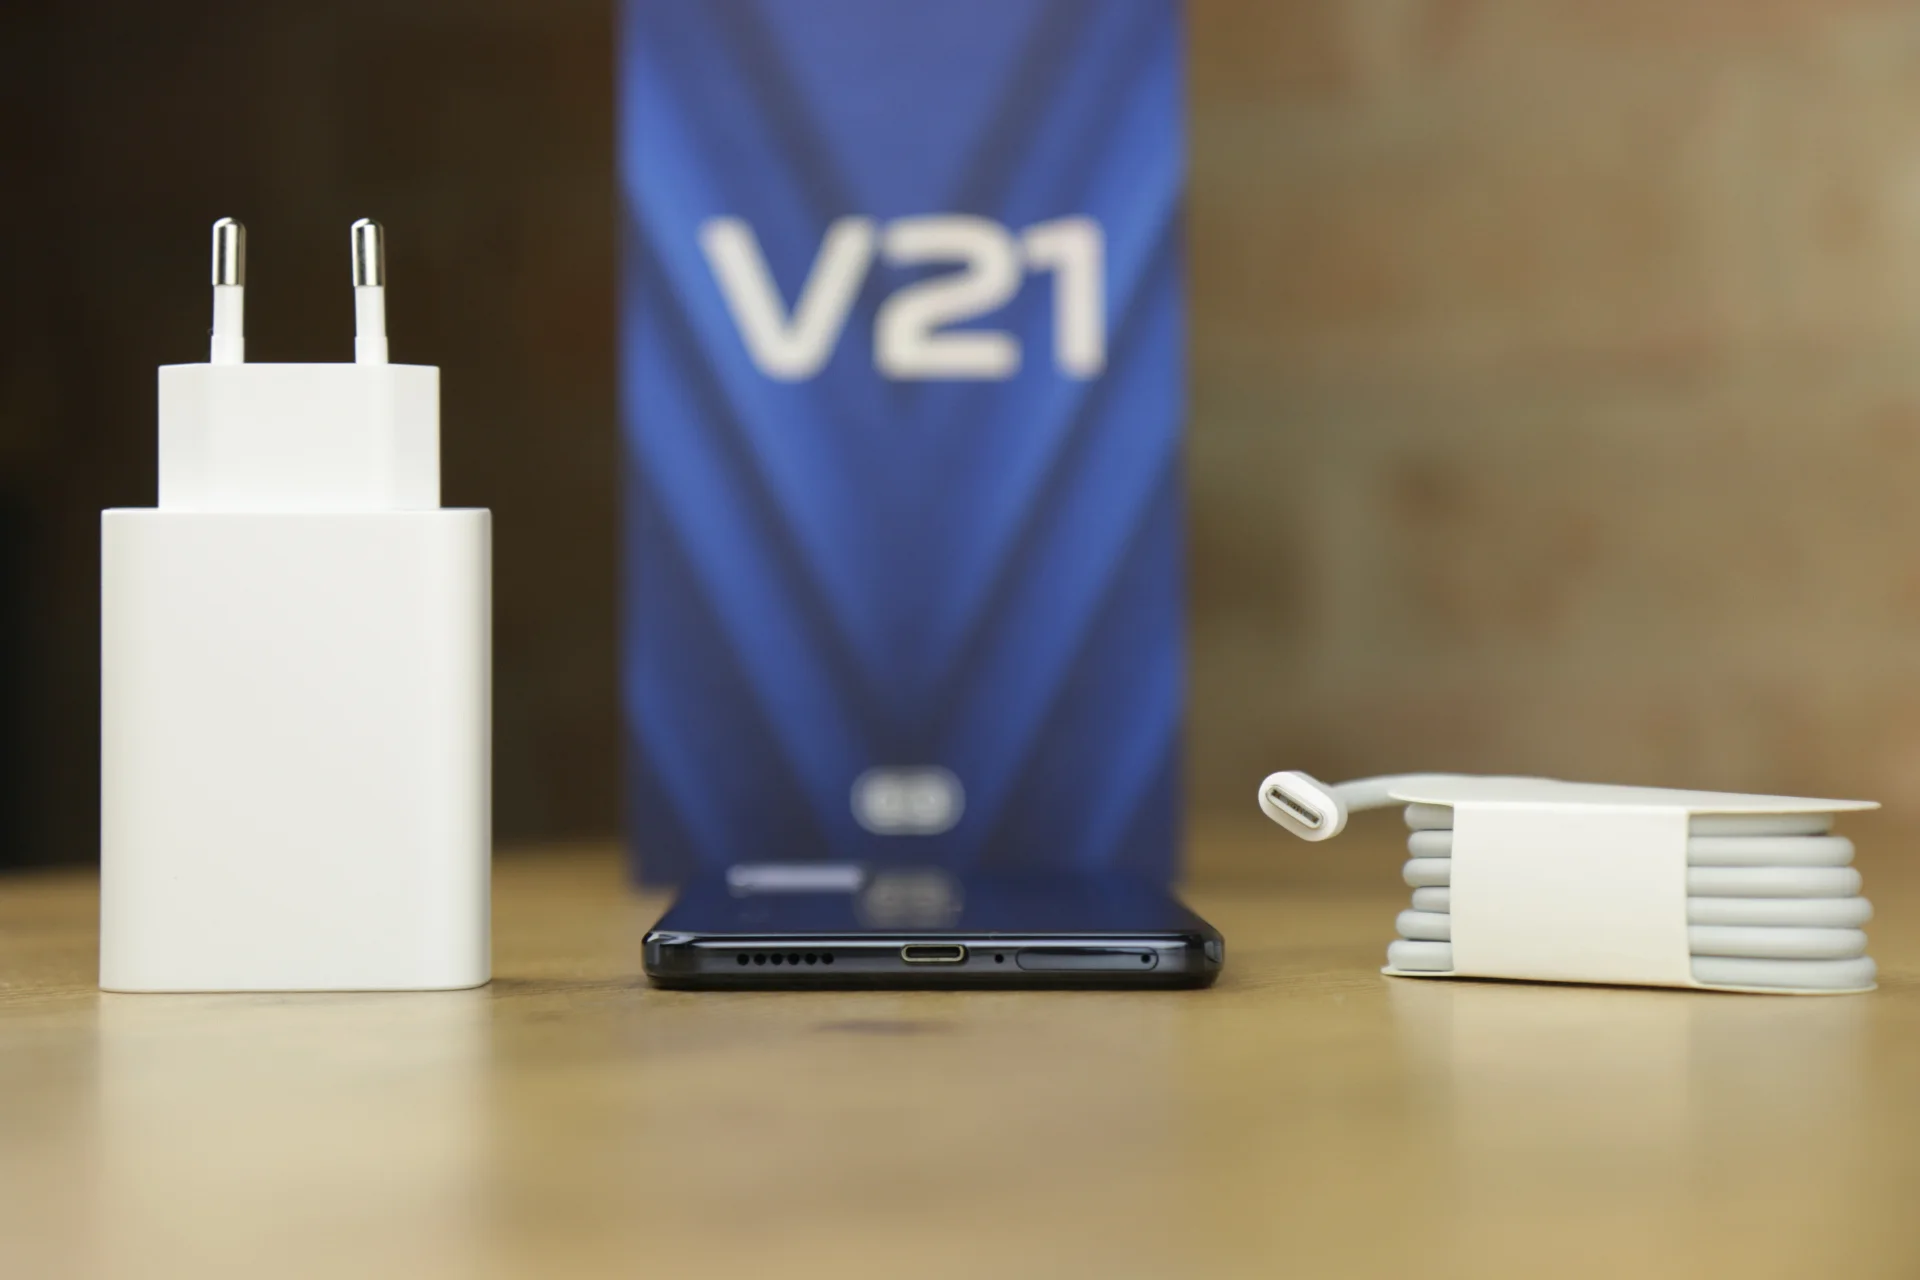 Обзорный тест Vivo V21 5G